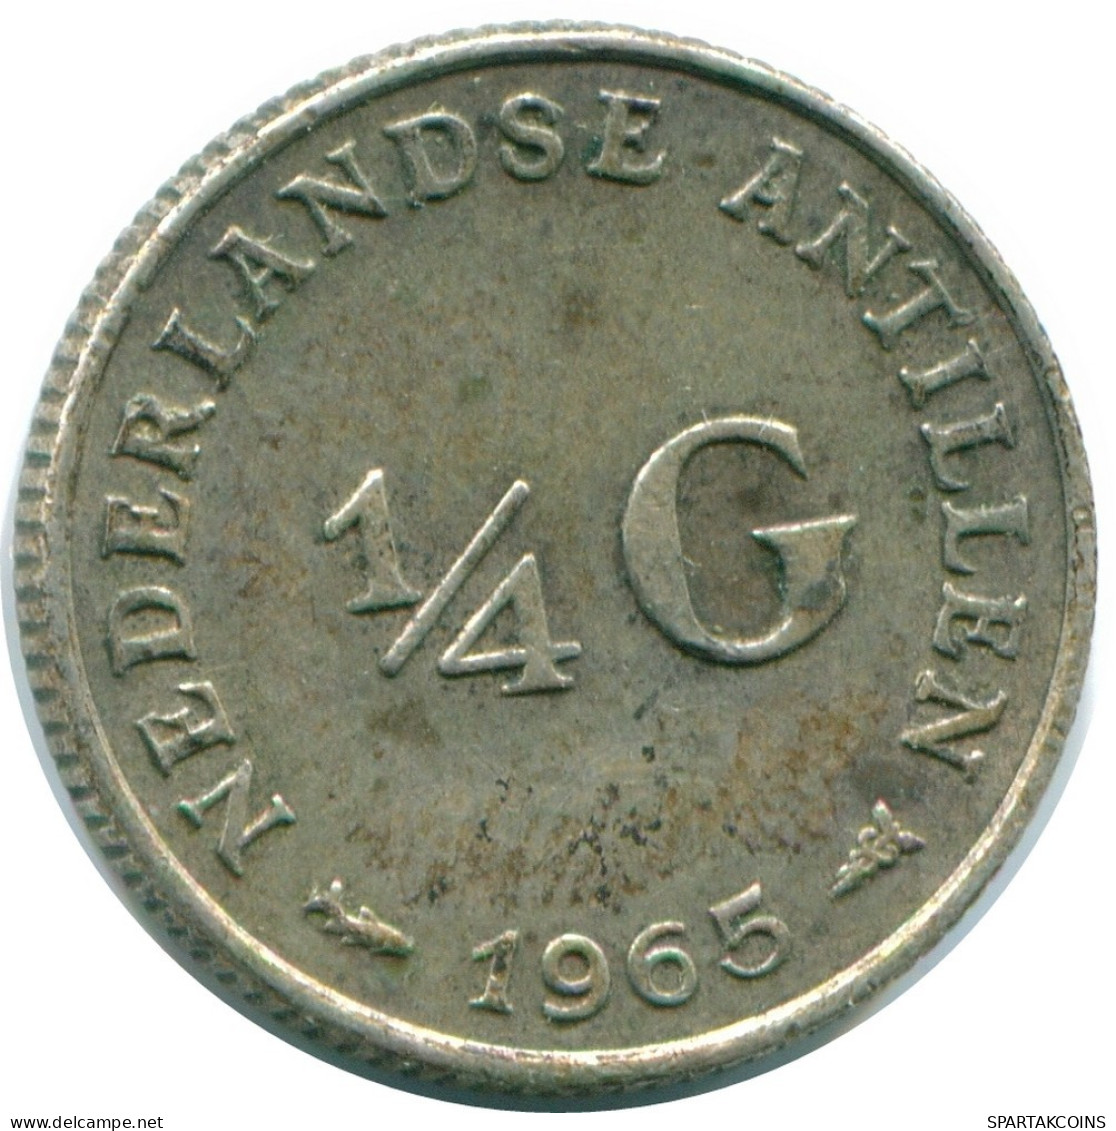 1/4 GULDEN 1965 NIEDERLÄNDISCHE ANTILLEN SILBER Koloniale Münze #NL11410.4.D.A - Antilles Néerlandaises